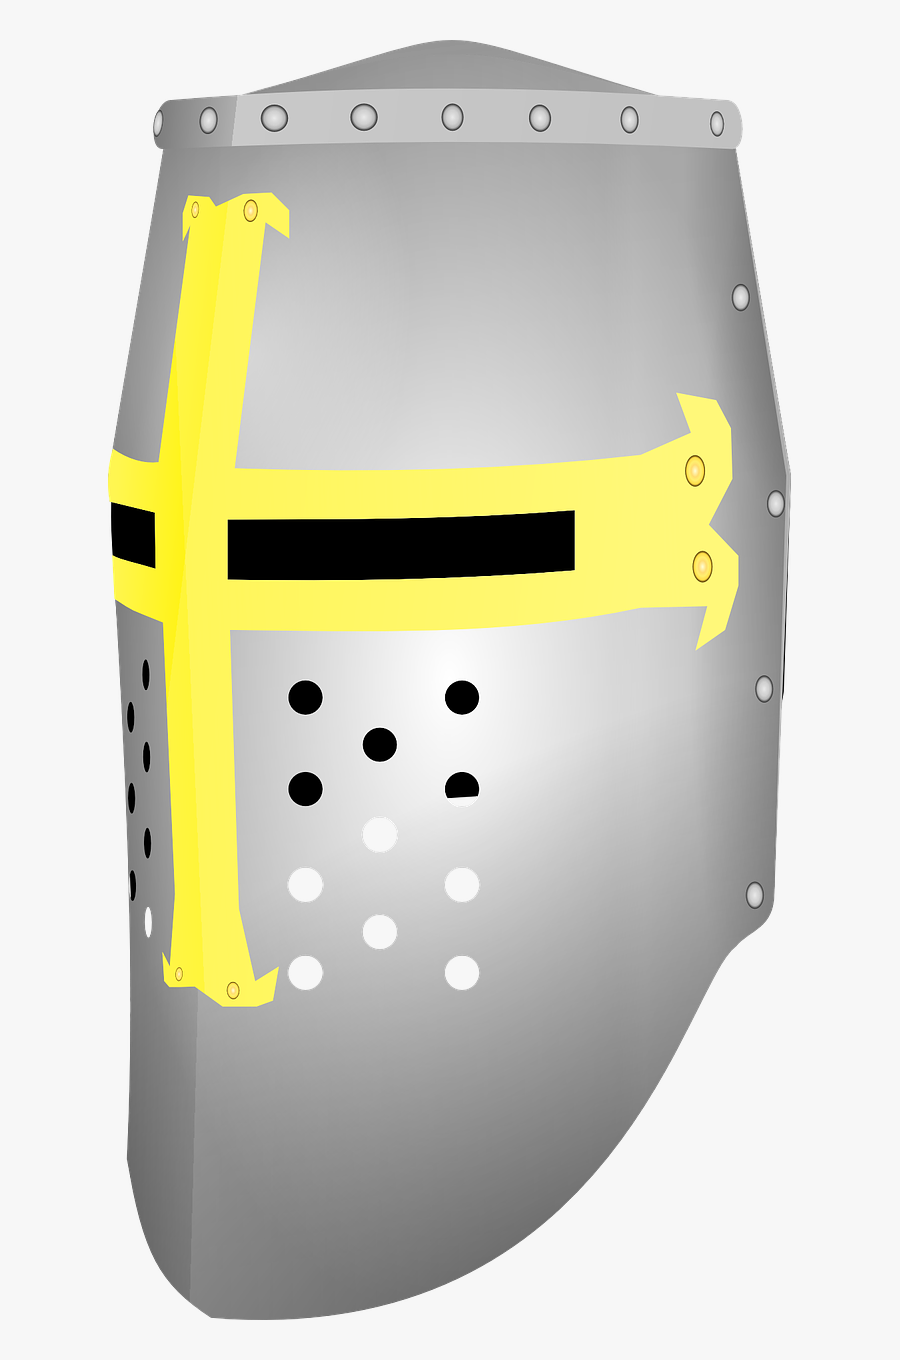 Crusader Great Helmet - Crusader Helmet Transparent Background, Transparent Clipart